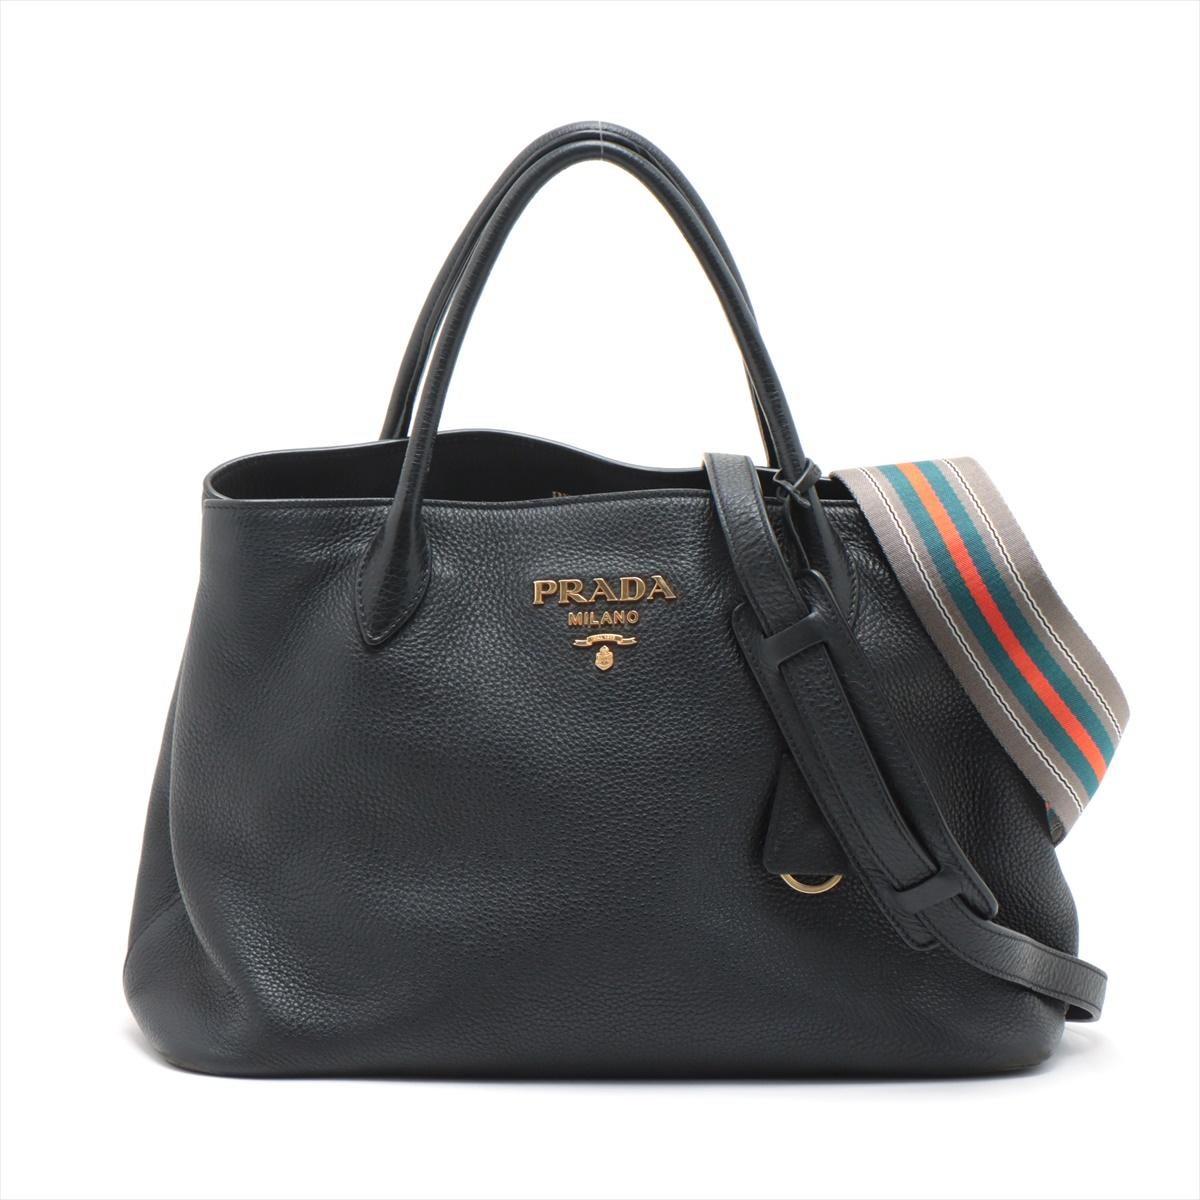 Die Prada Vitello Daino Two-Way Handtasche aus Leder in Schwarz bietet sowohl Raffinesse als auch Vielseitigkeit. Gefertigt aus dem unverwechselbaren Vitello Daino Leder, das für seine gekörnte Struktur bekannt ist, strahlt die Tasche in klassischem